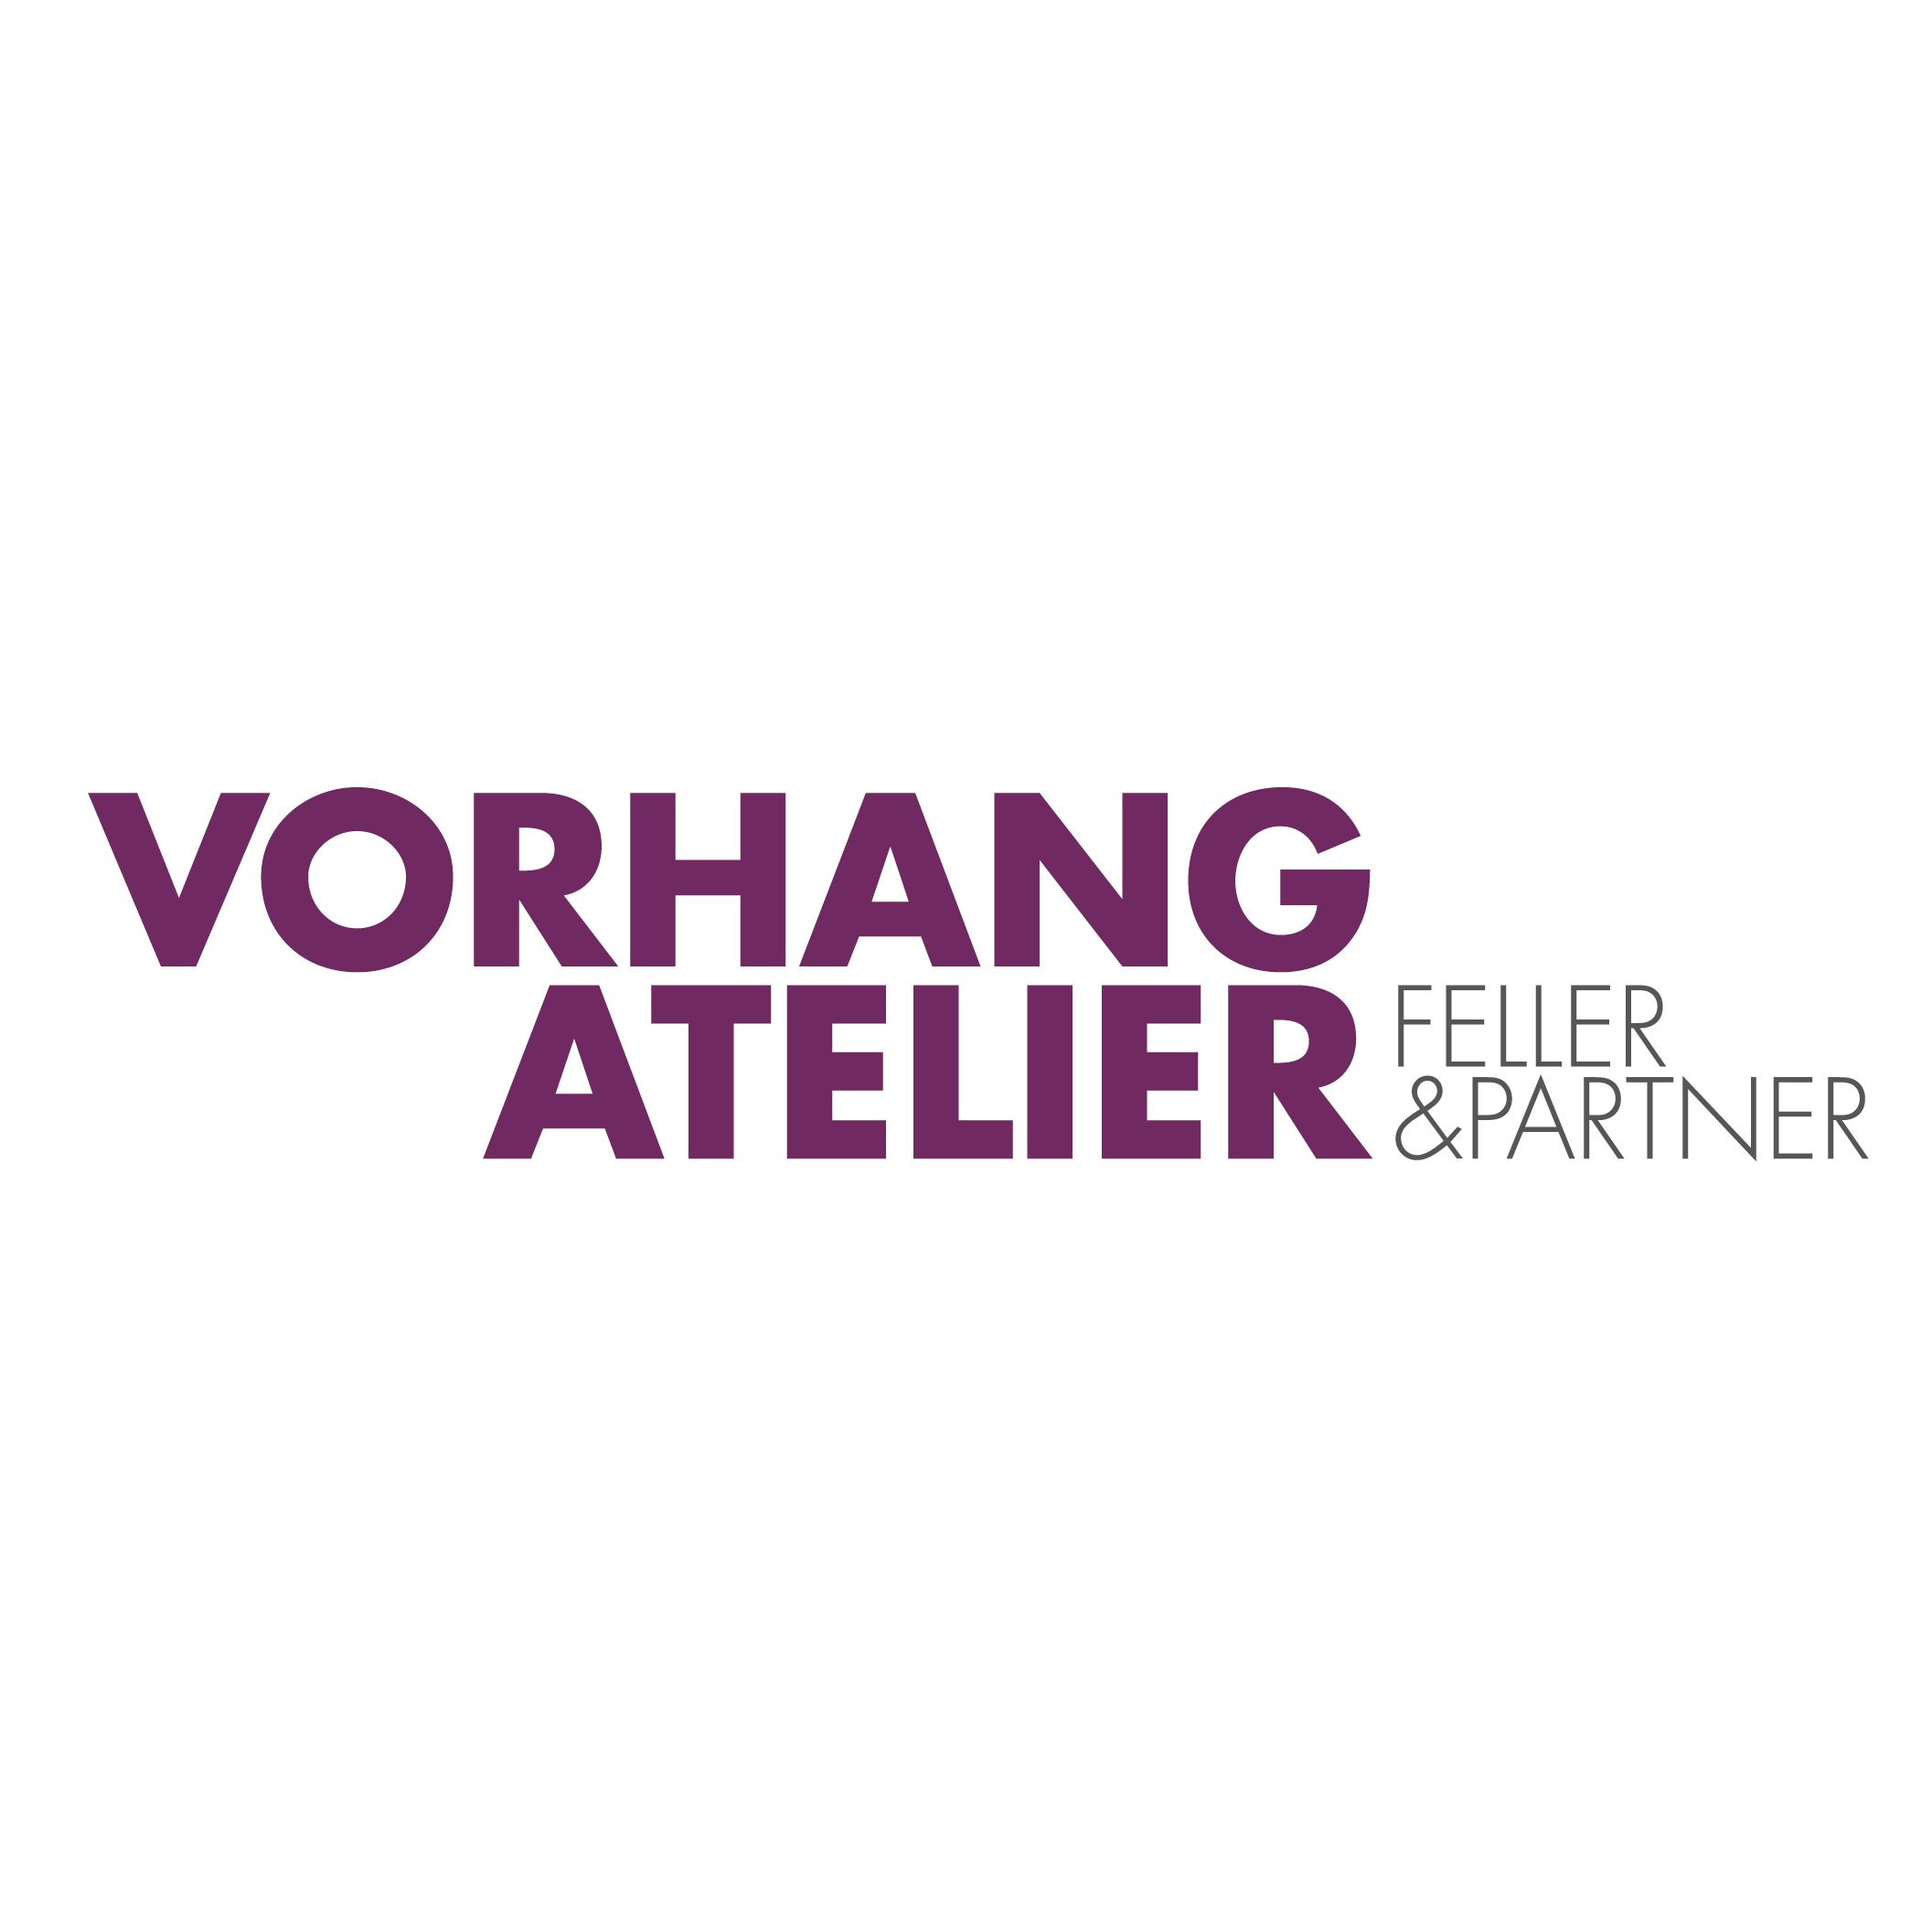 Vorhangatelier Feller & Partner Logo